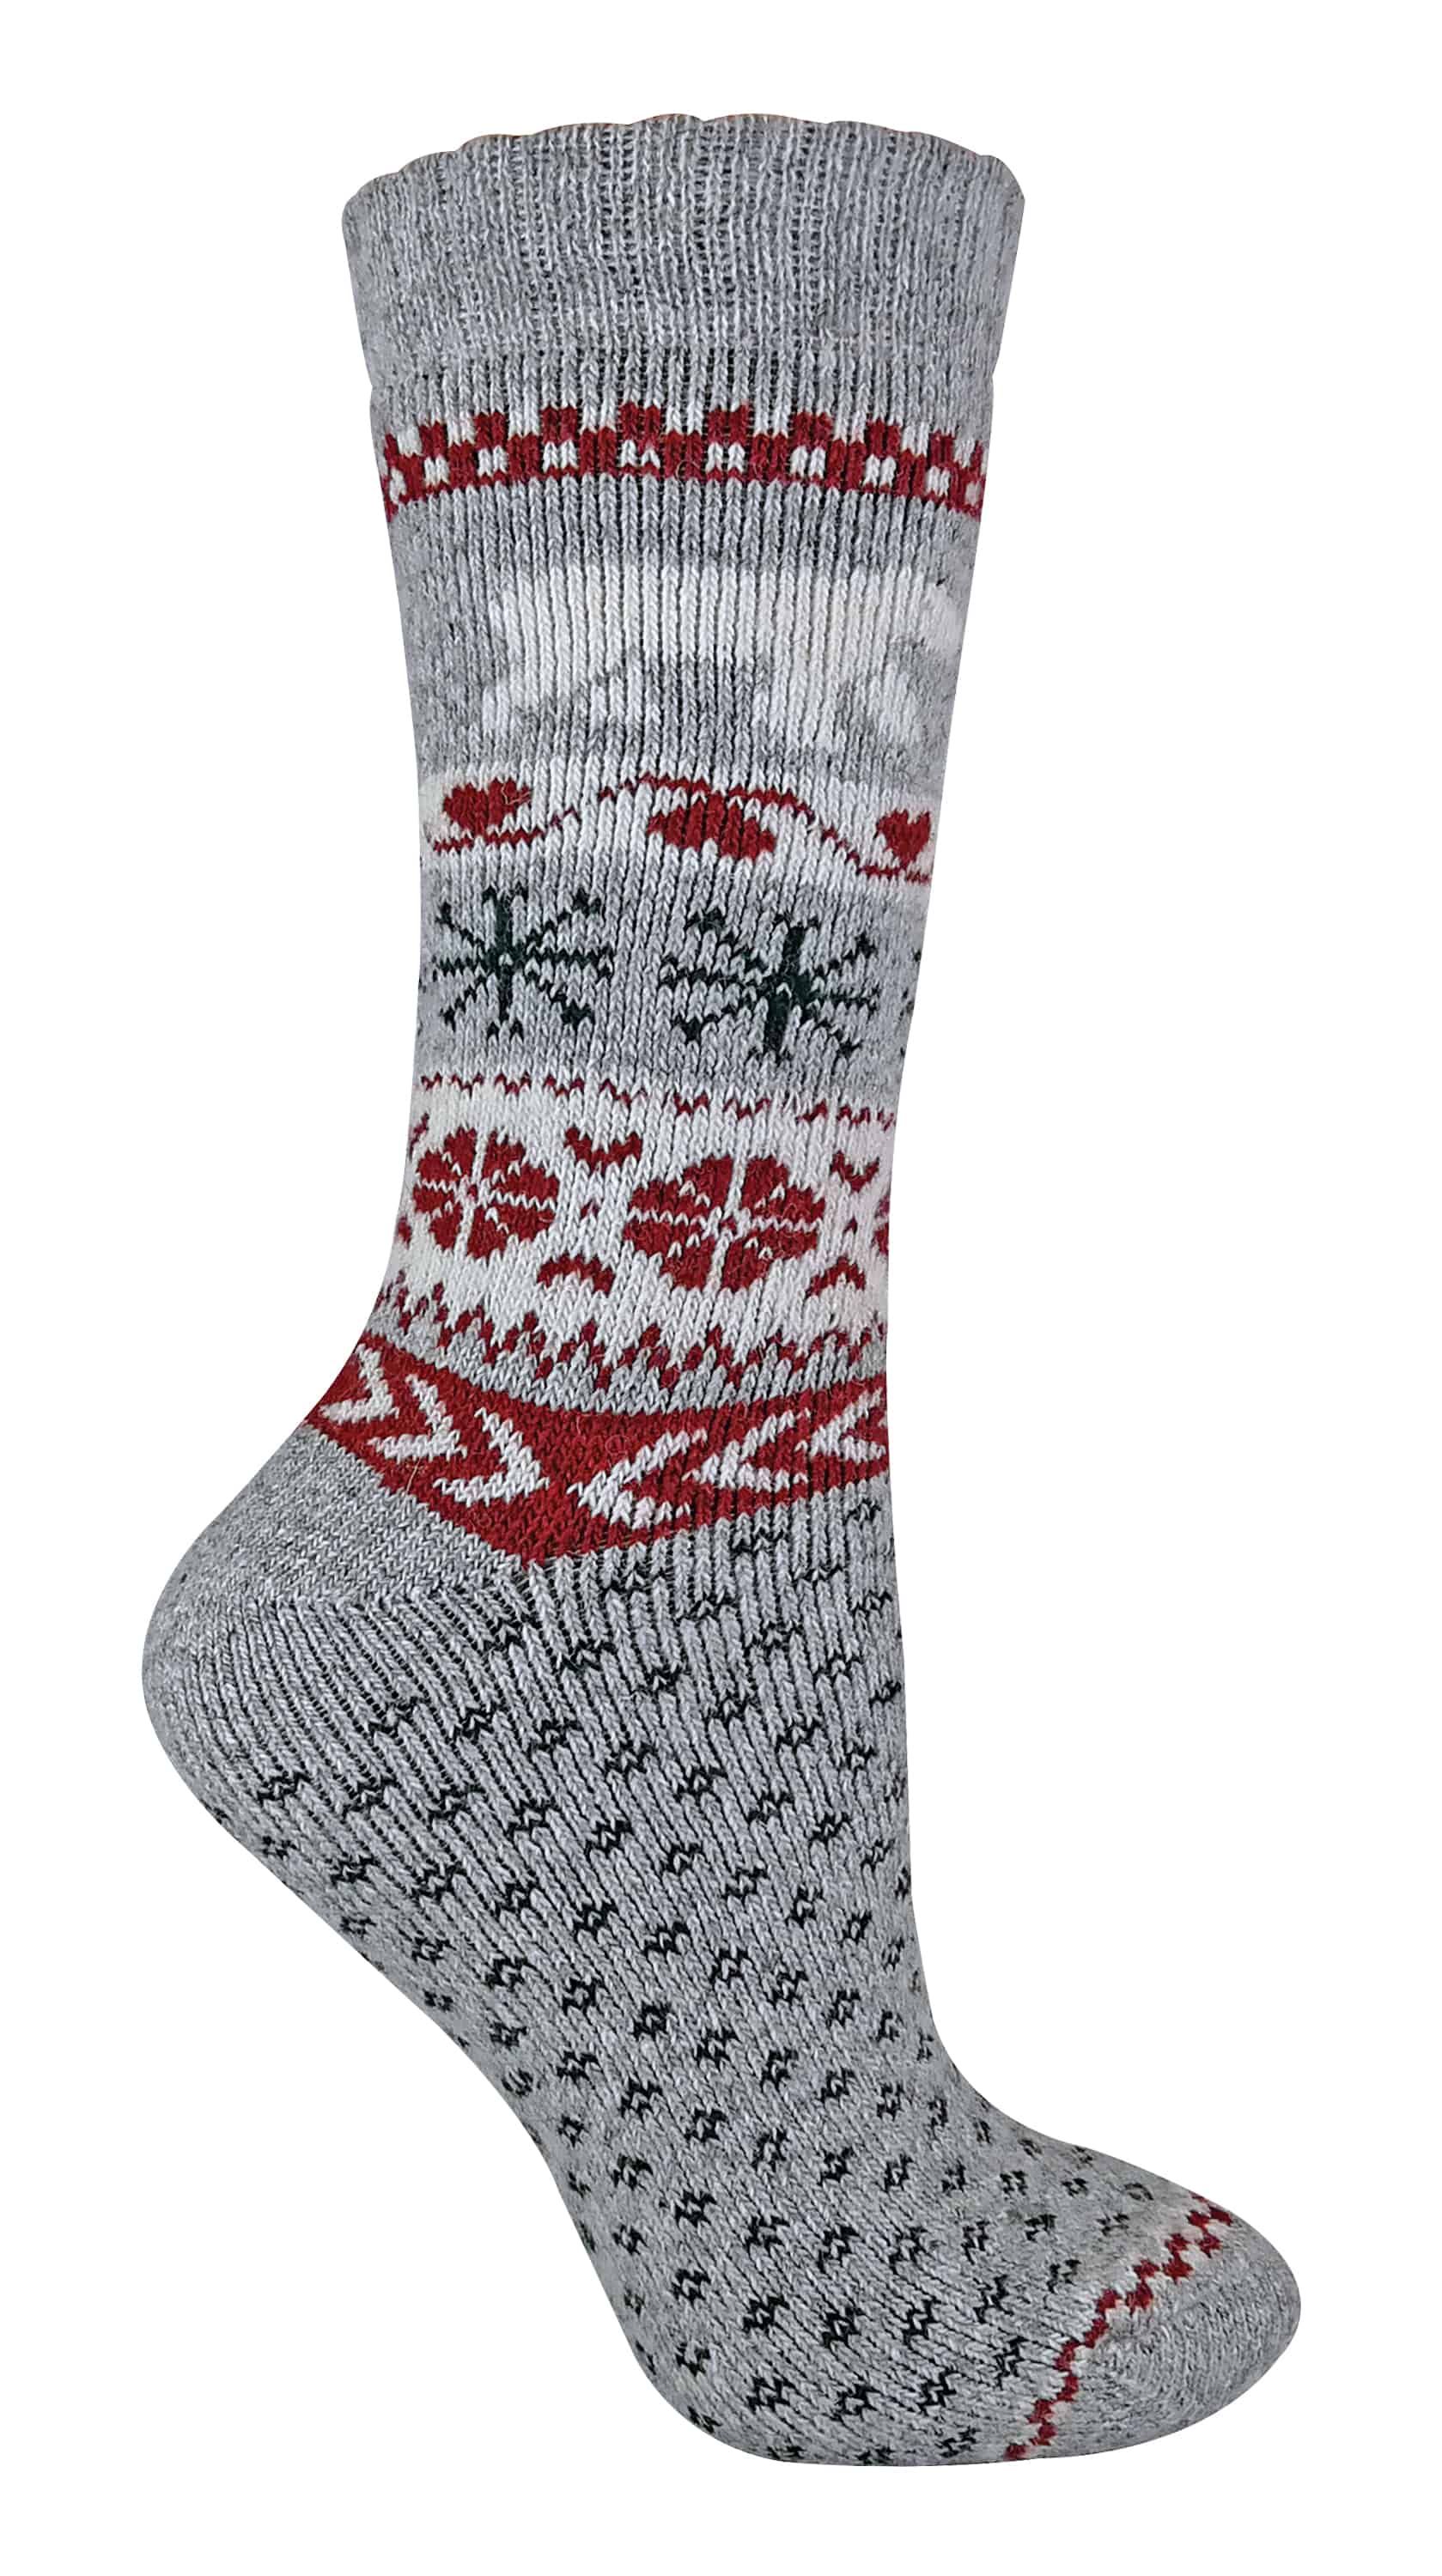 SOCK SNOB - Women's Wool Knitting Pattern Novelty Christmas Socks